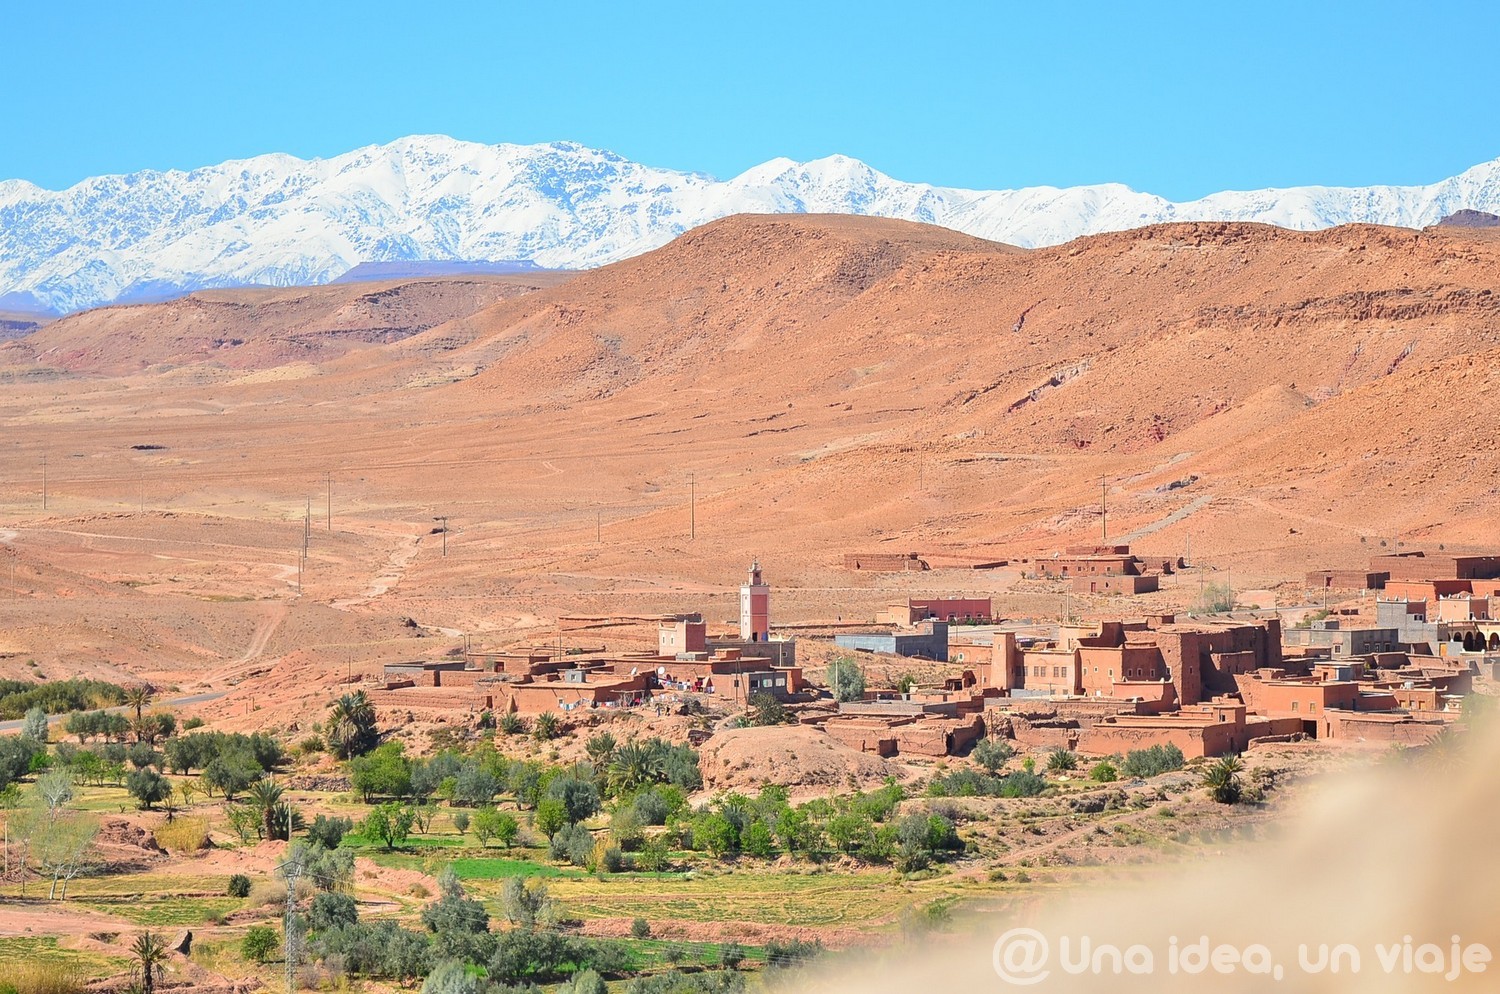 marrakech-marruecos-excursion-ruta-desierto-sahara-unaideaunviaje-09